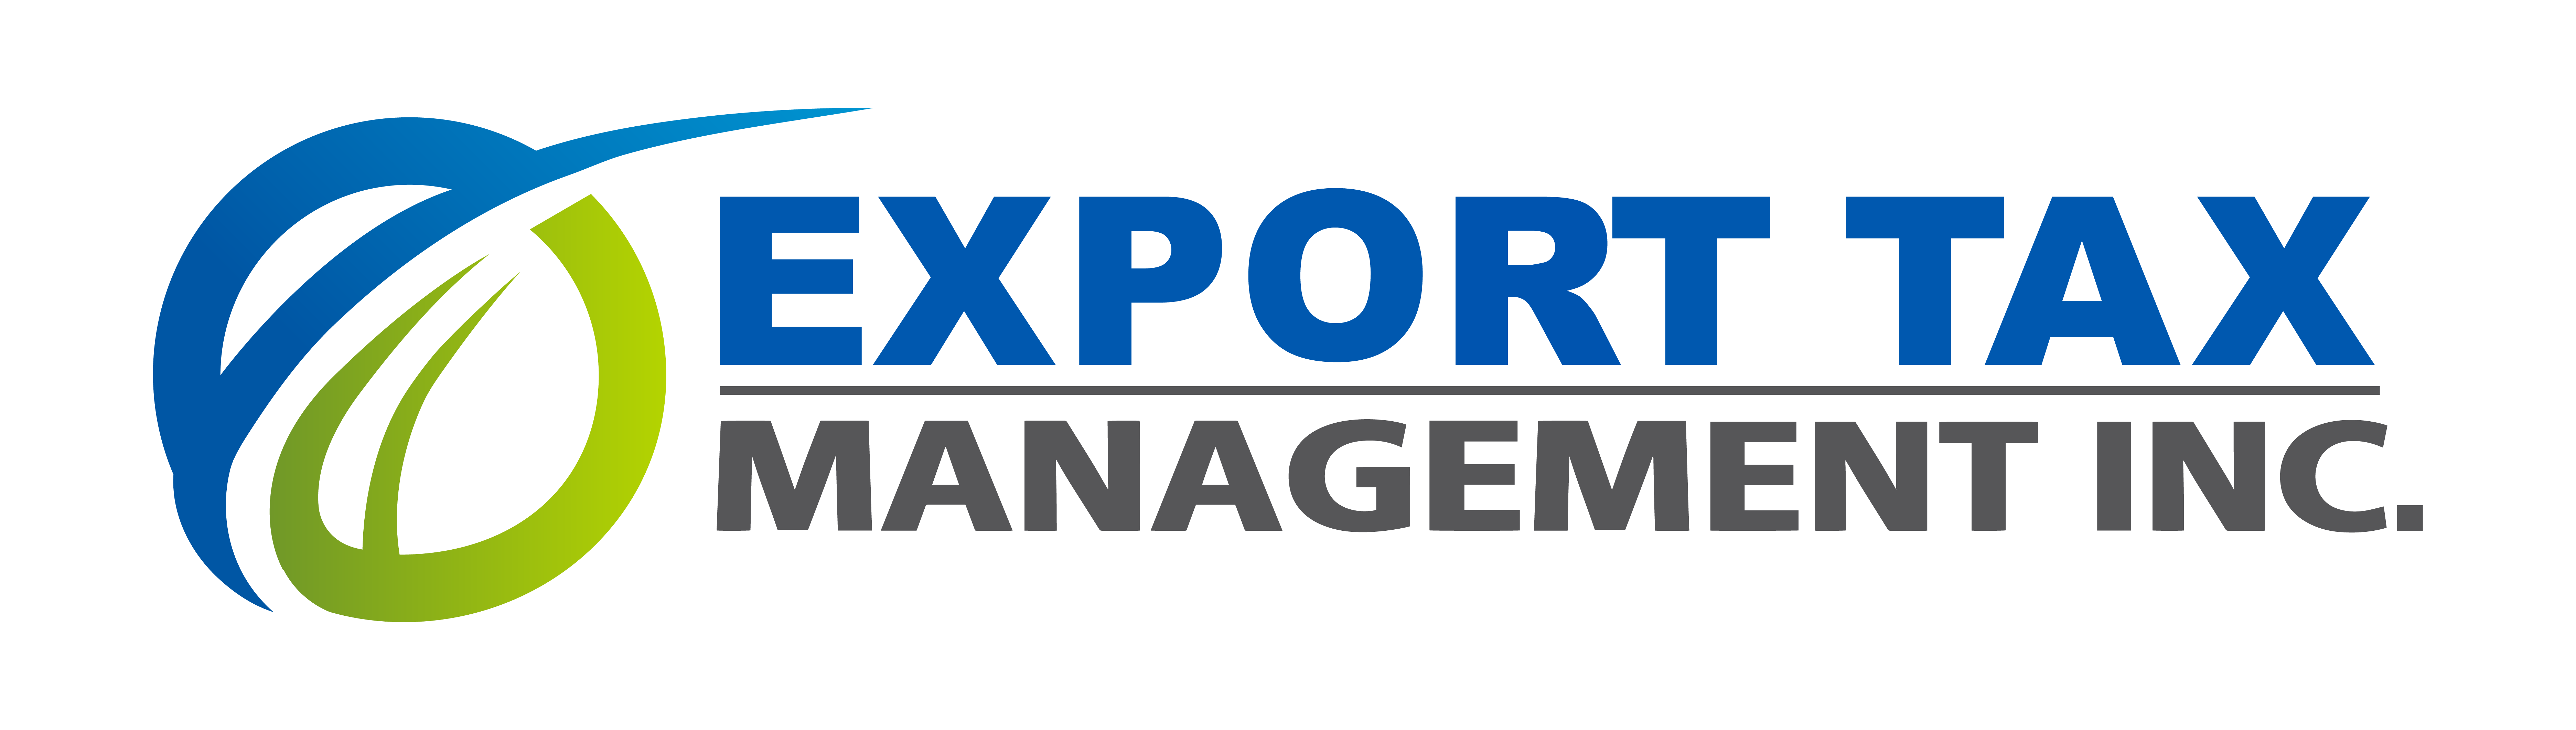 Export Tax Management, Inc